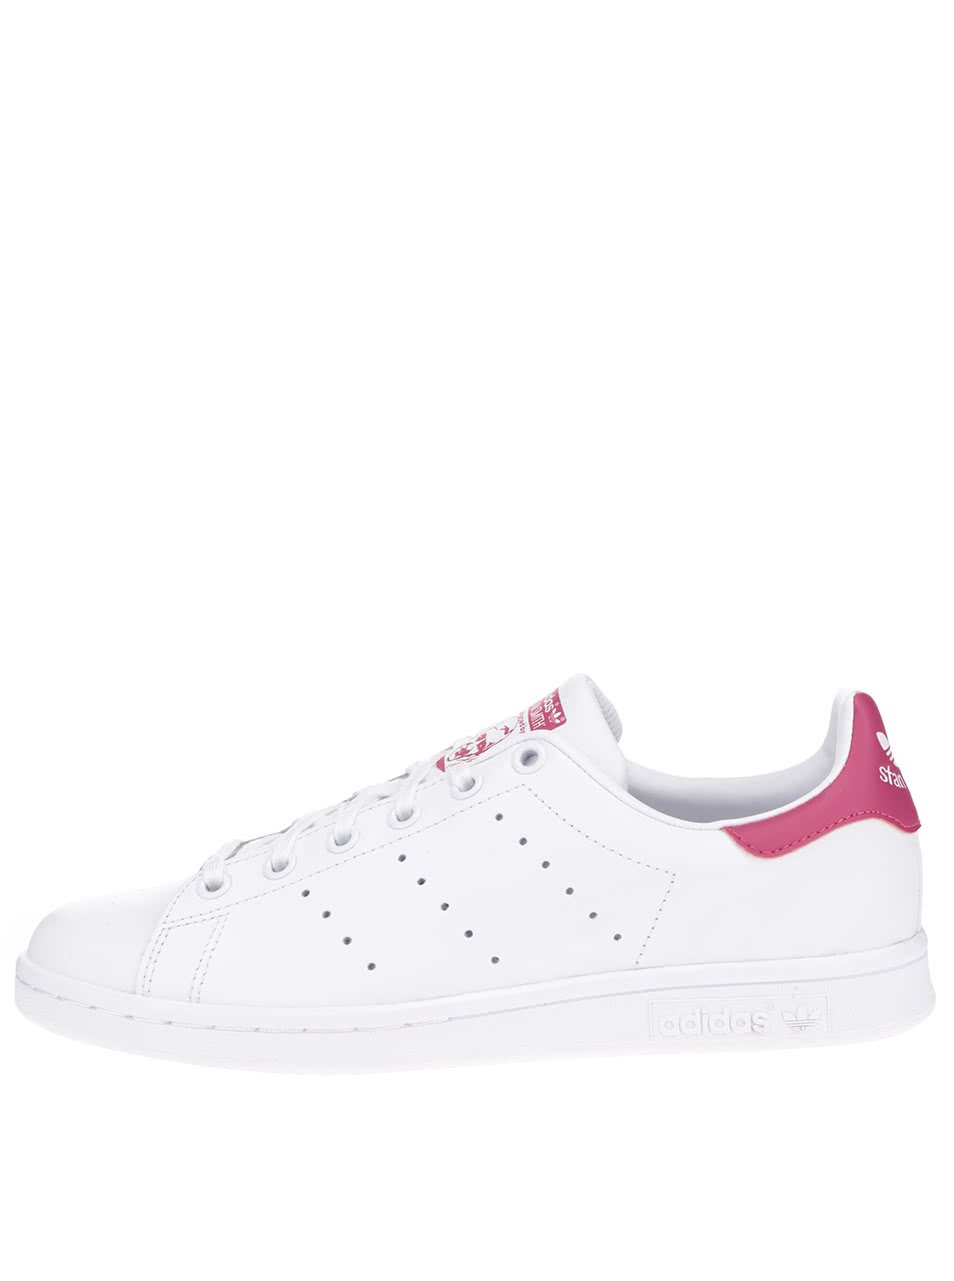 Bílé dámské kožené tenisky s růžovými detaily adidas Originals Stan Smith